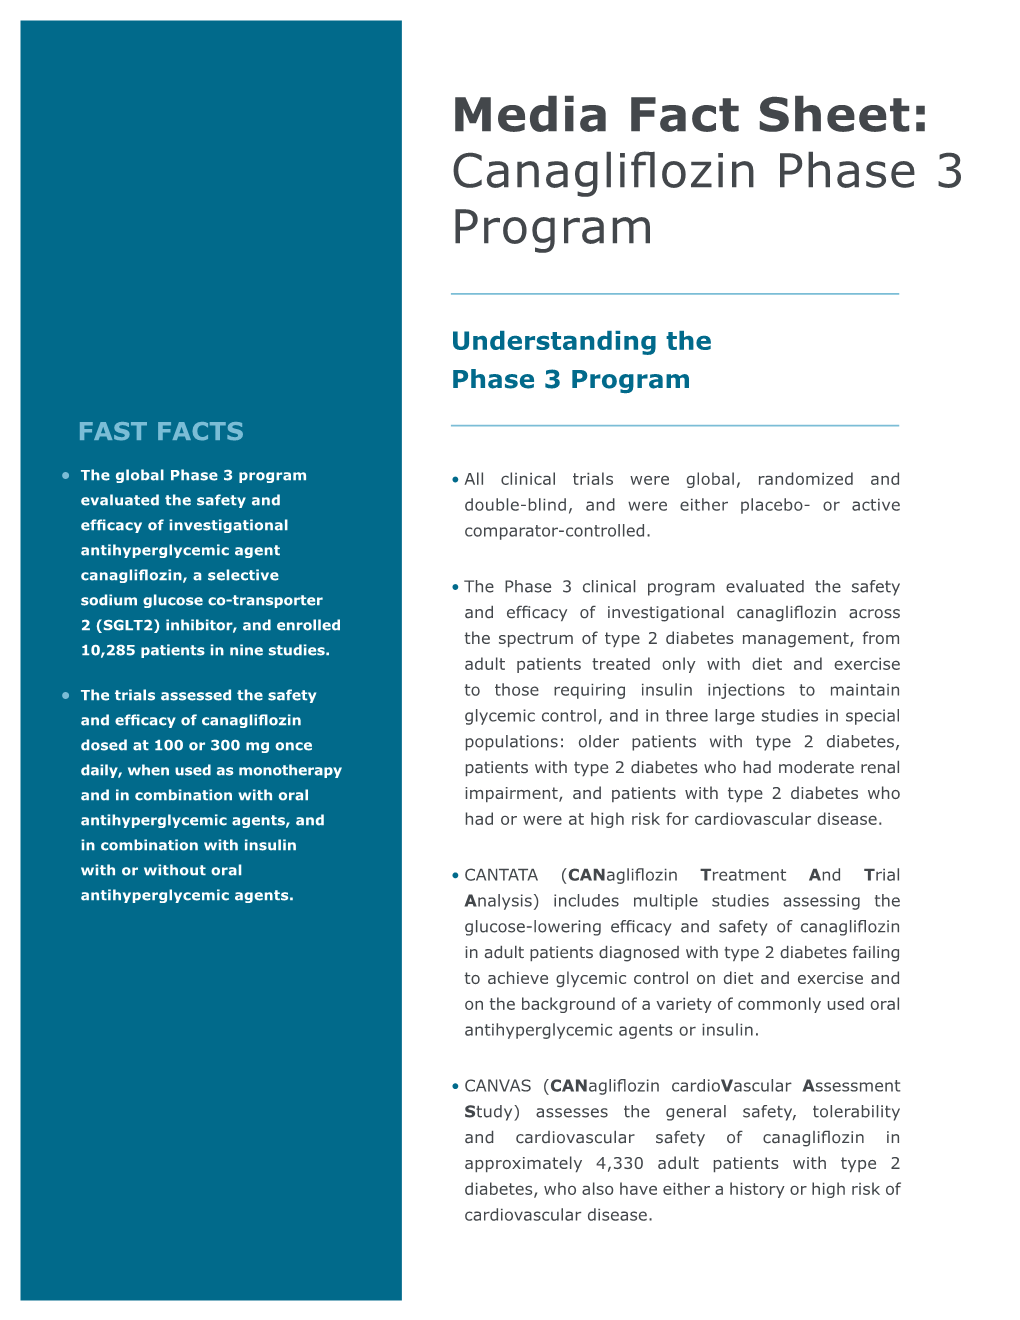 Canagliflozin Phase 3 Program Media Fact Sheet